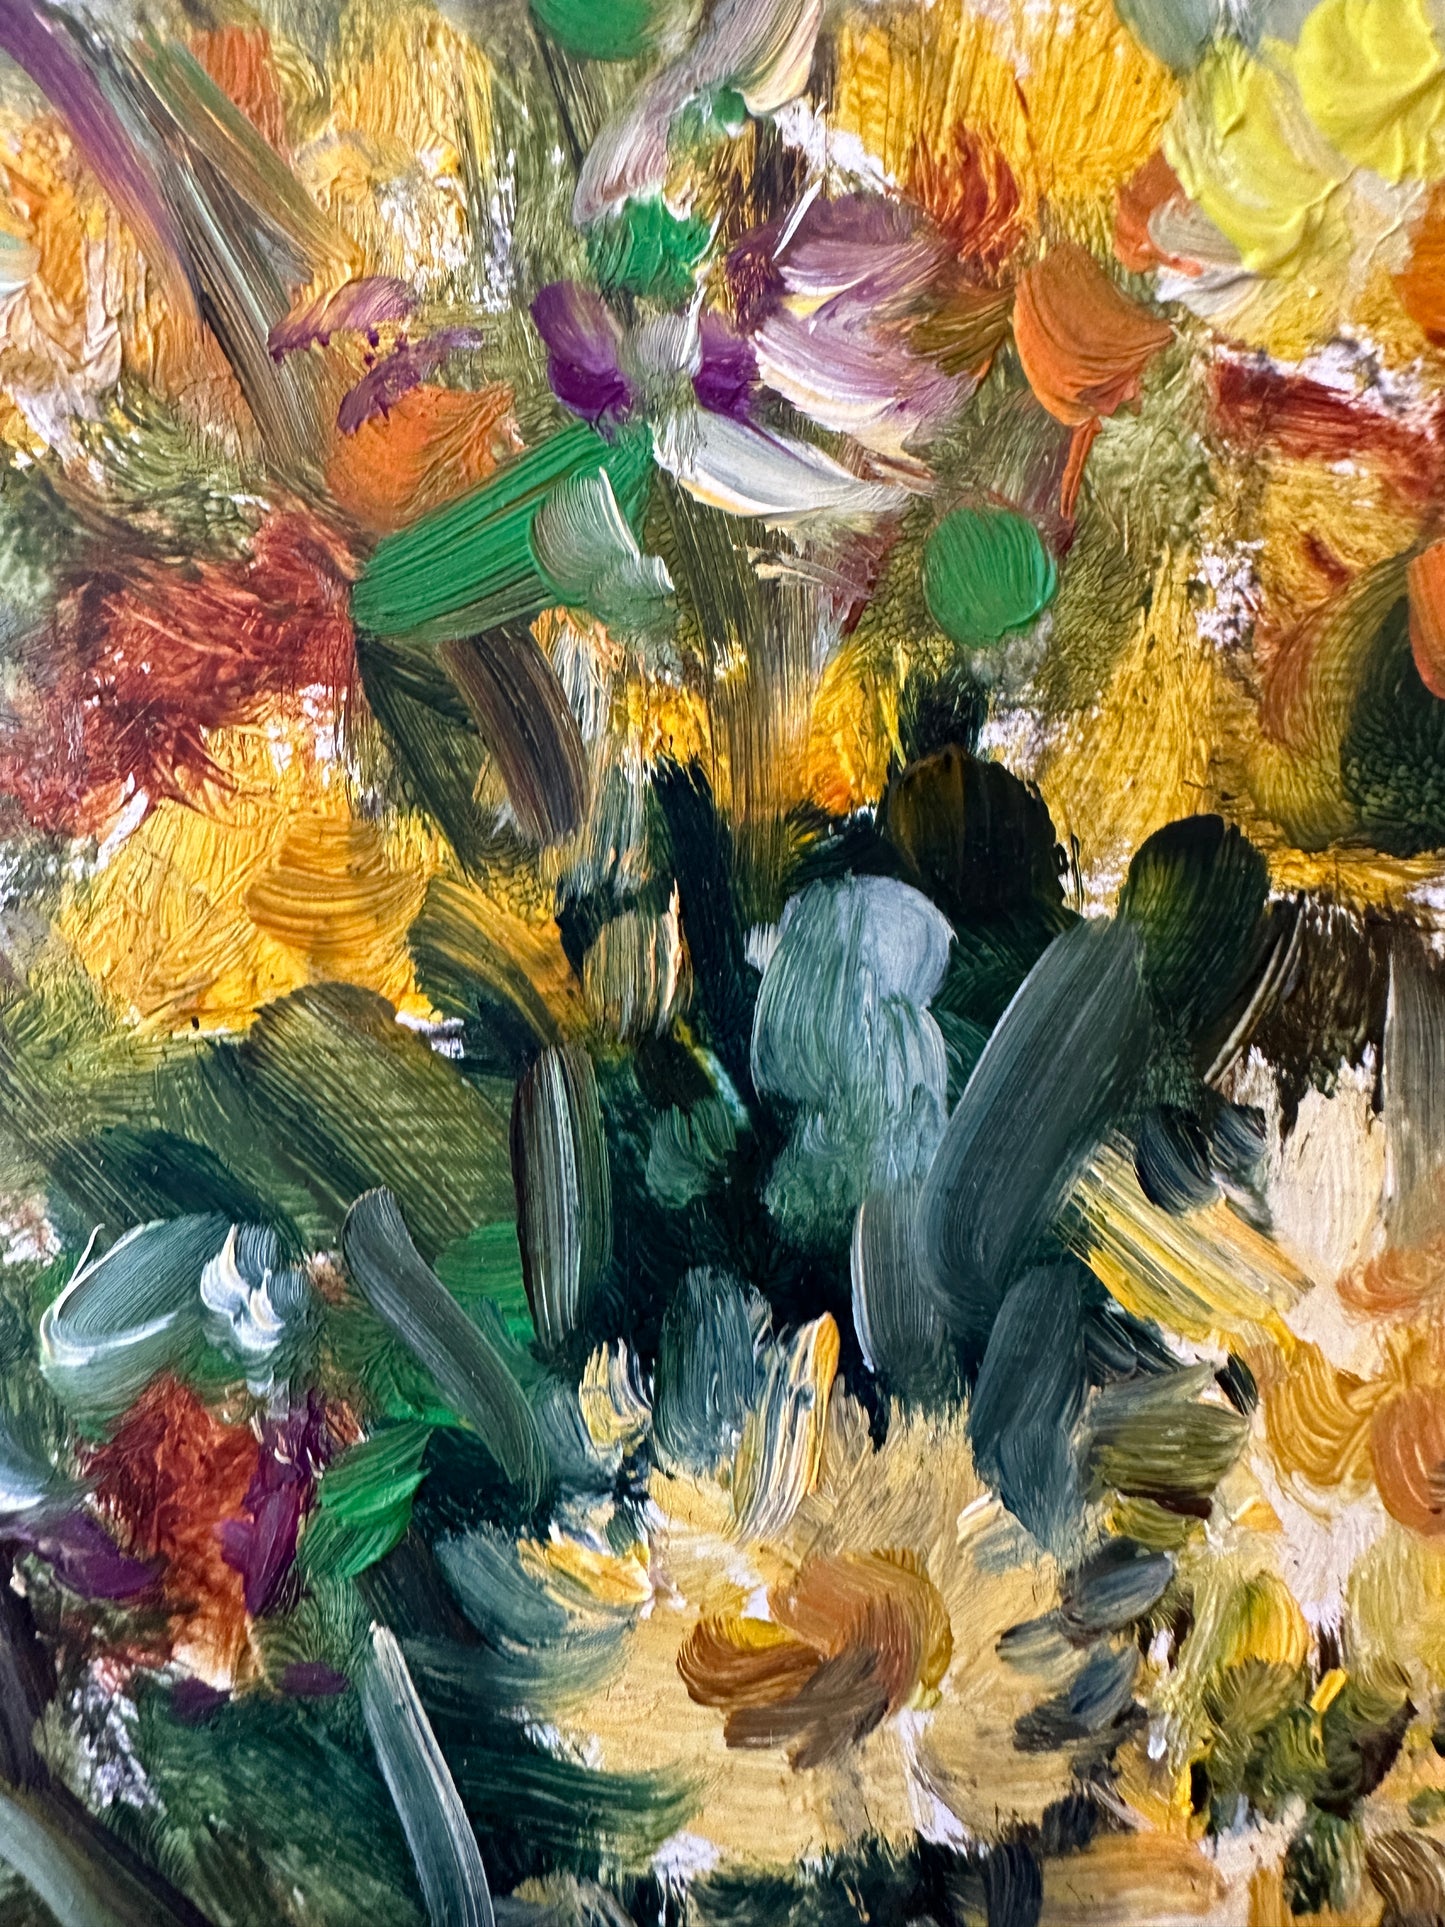 Staudt (1995) Ölgemälde Moderne Ansicht eines Stilllebens Blumenstrauß